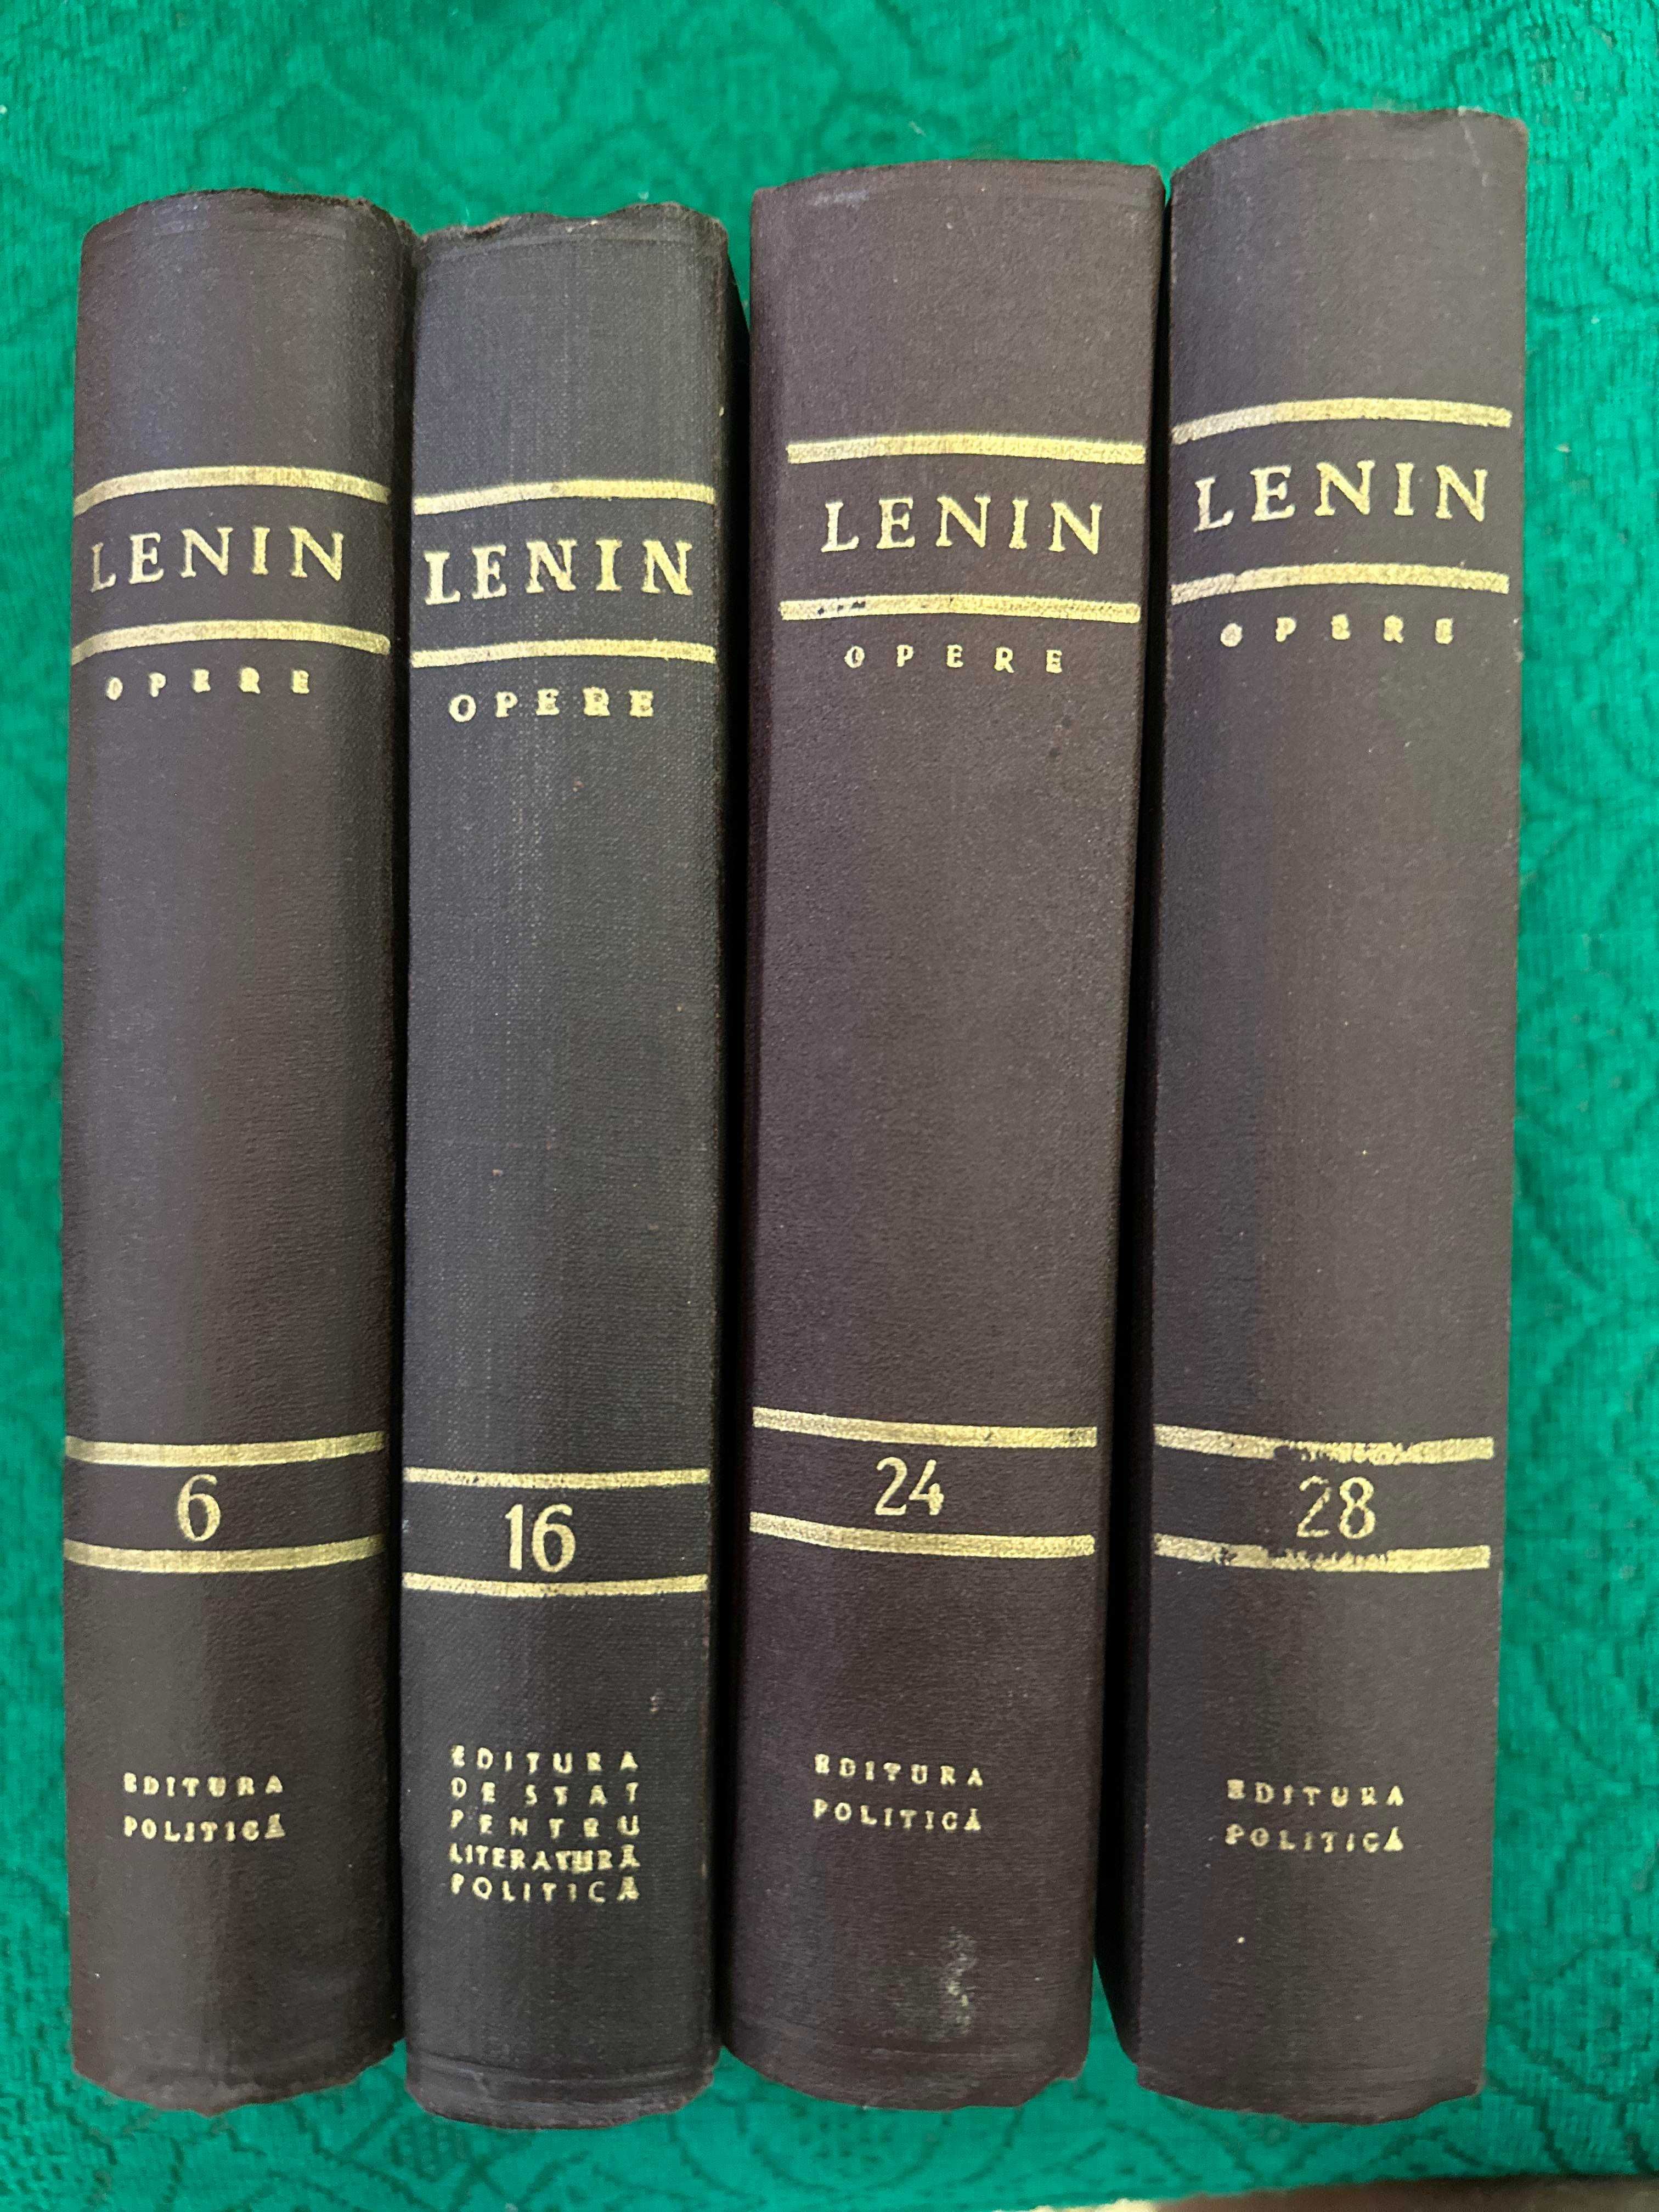 Opere - Lenin volumele din fotografii